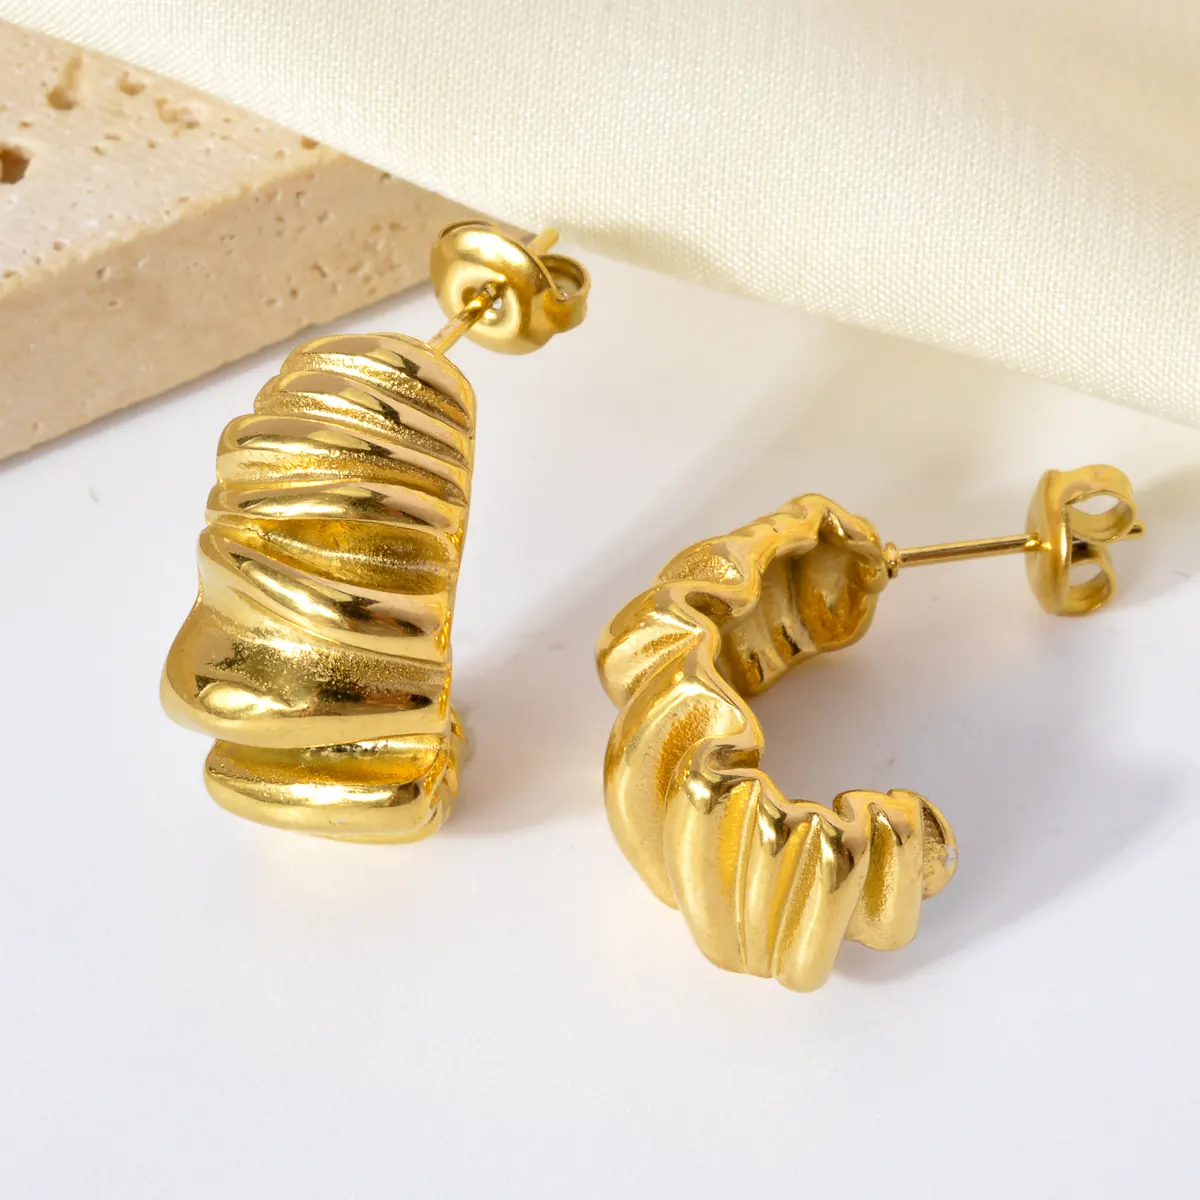 Wholesale bulk custom hypoallergenic waterproof gold plated stainless steel women Luxury fashion jewelry hoop earrings